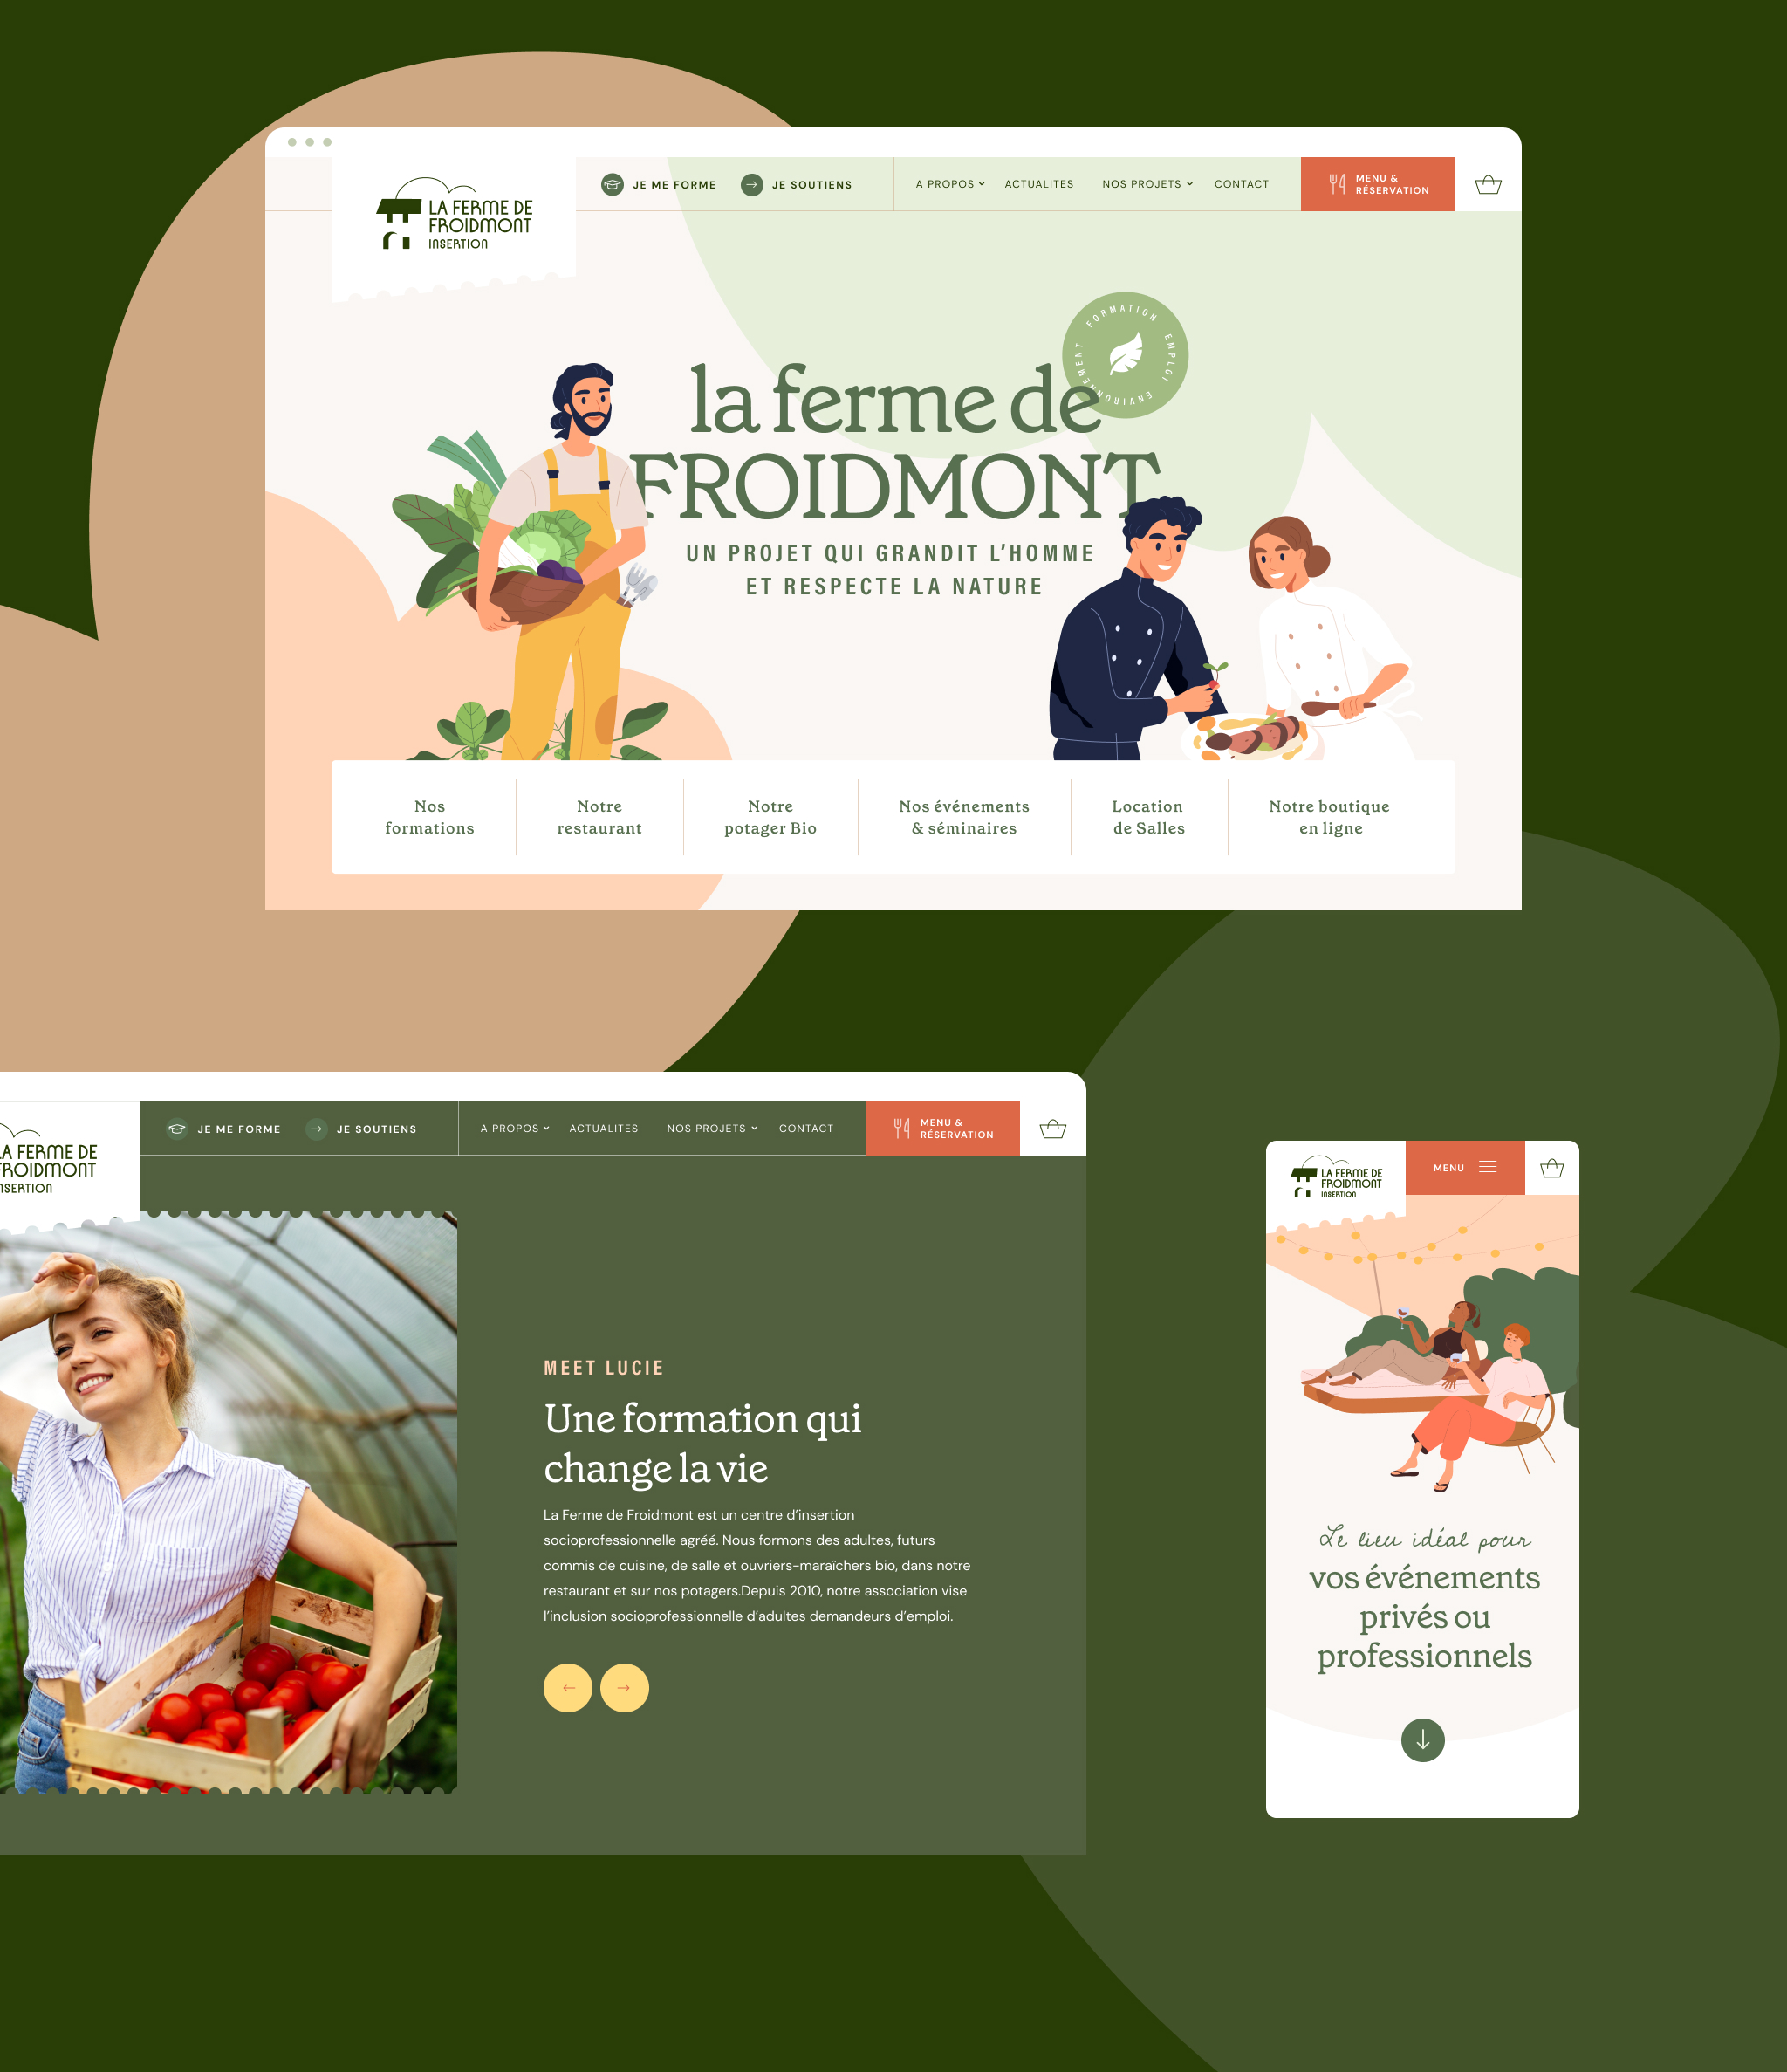 Productie van de Froidmont website door Atelier Design communicatiebureau Brussel